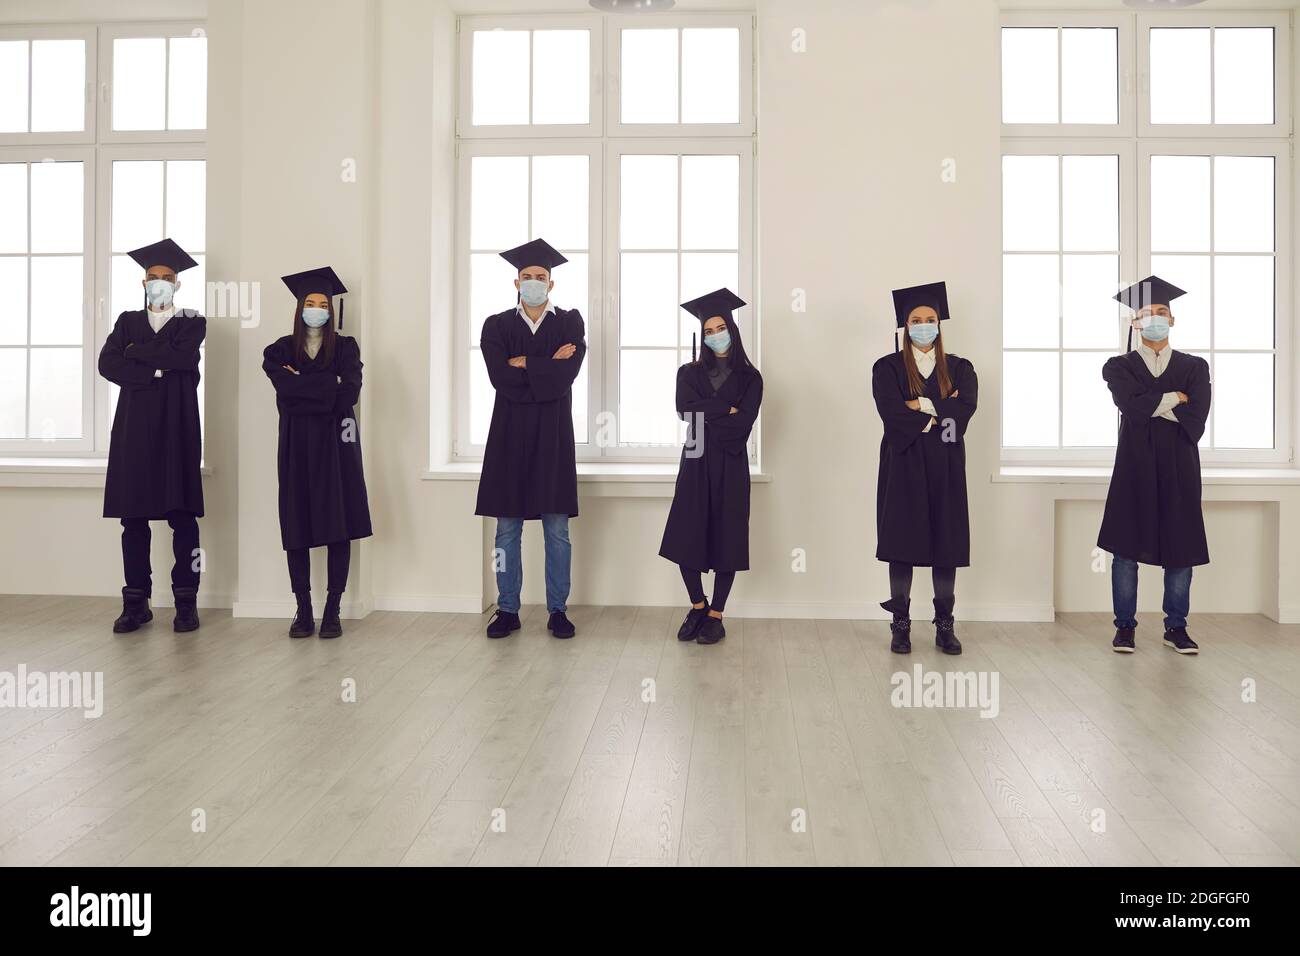 Les étudiants en robes de remise des diplômes et masques de visage debout dans la salle d'université, gardant la distance sociale Banque D'Images